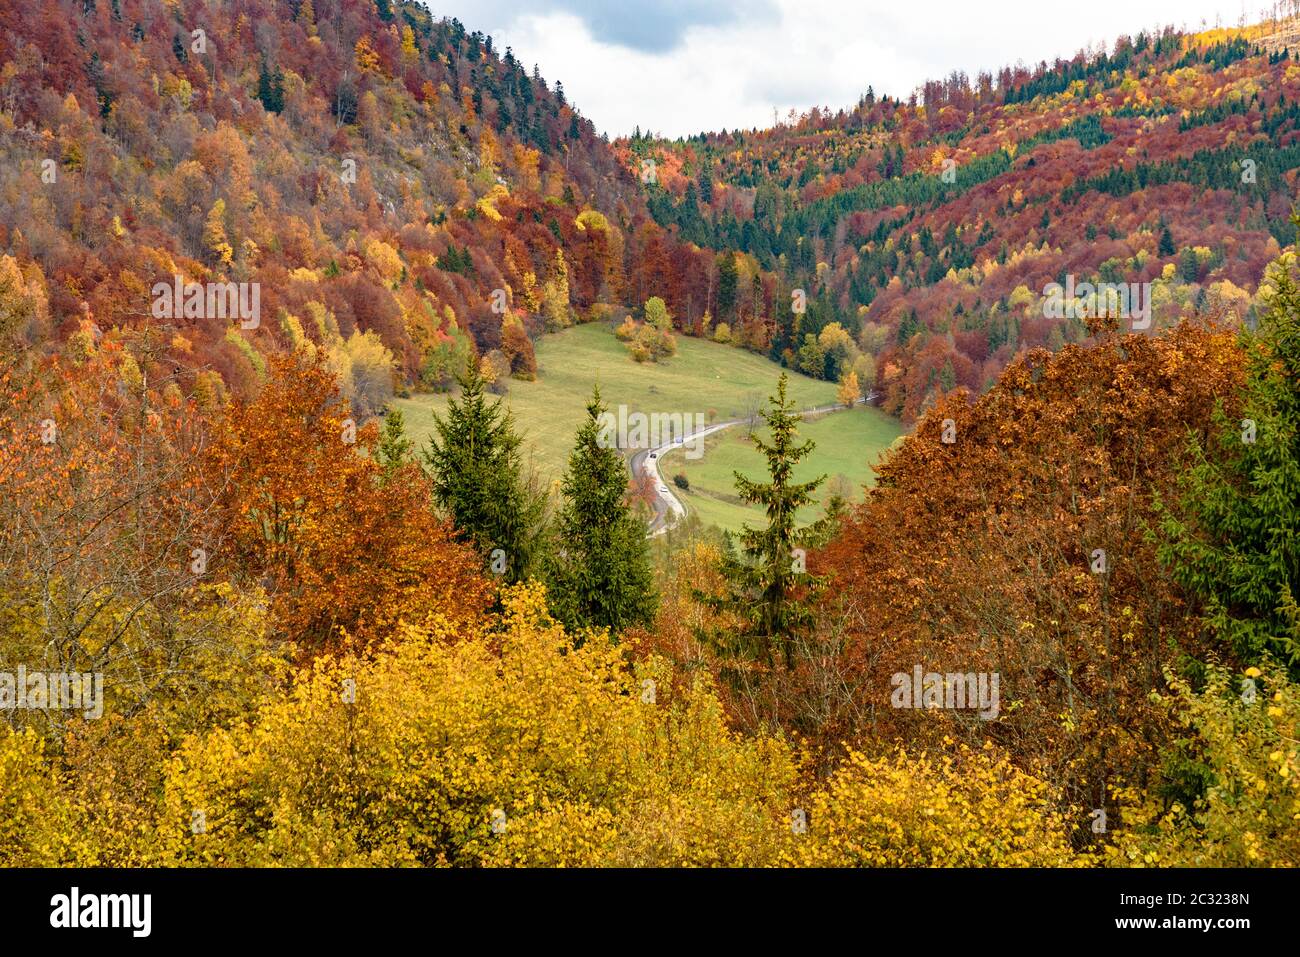 Bäume im Herbst Farben mit der Wicklung Route 531 in der Revuca Landkreis Banska Bystrica Region in der Slowakei Stockfoto